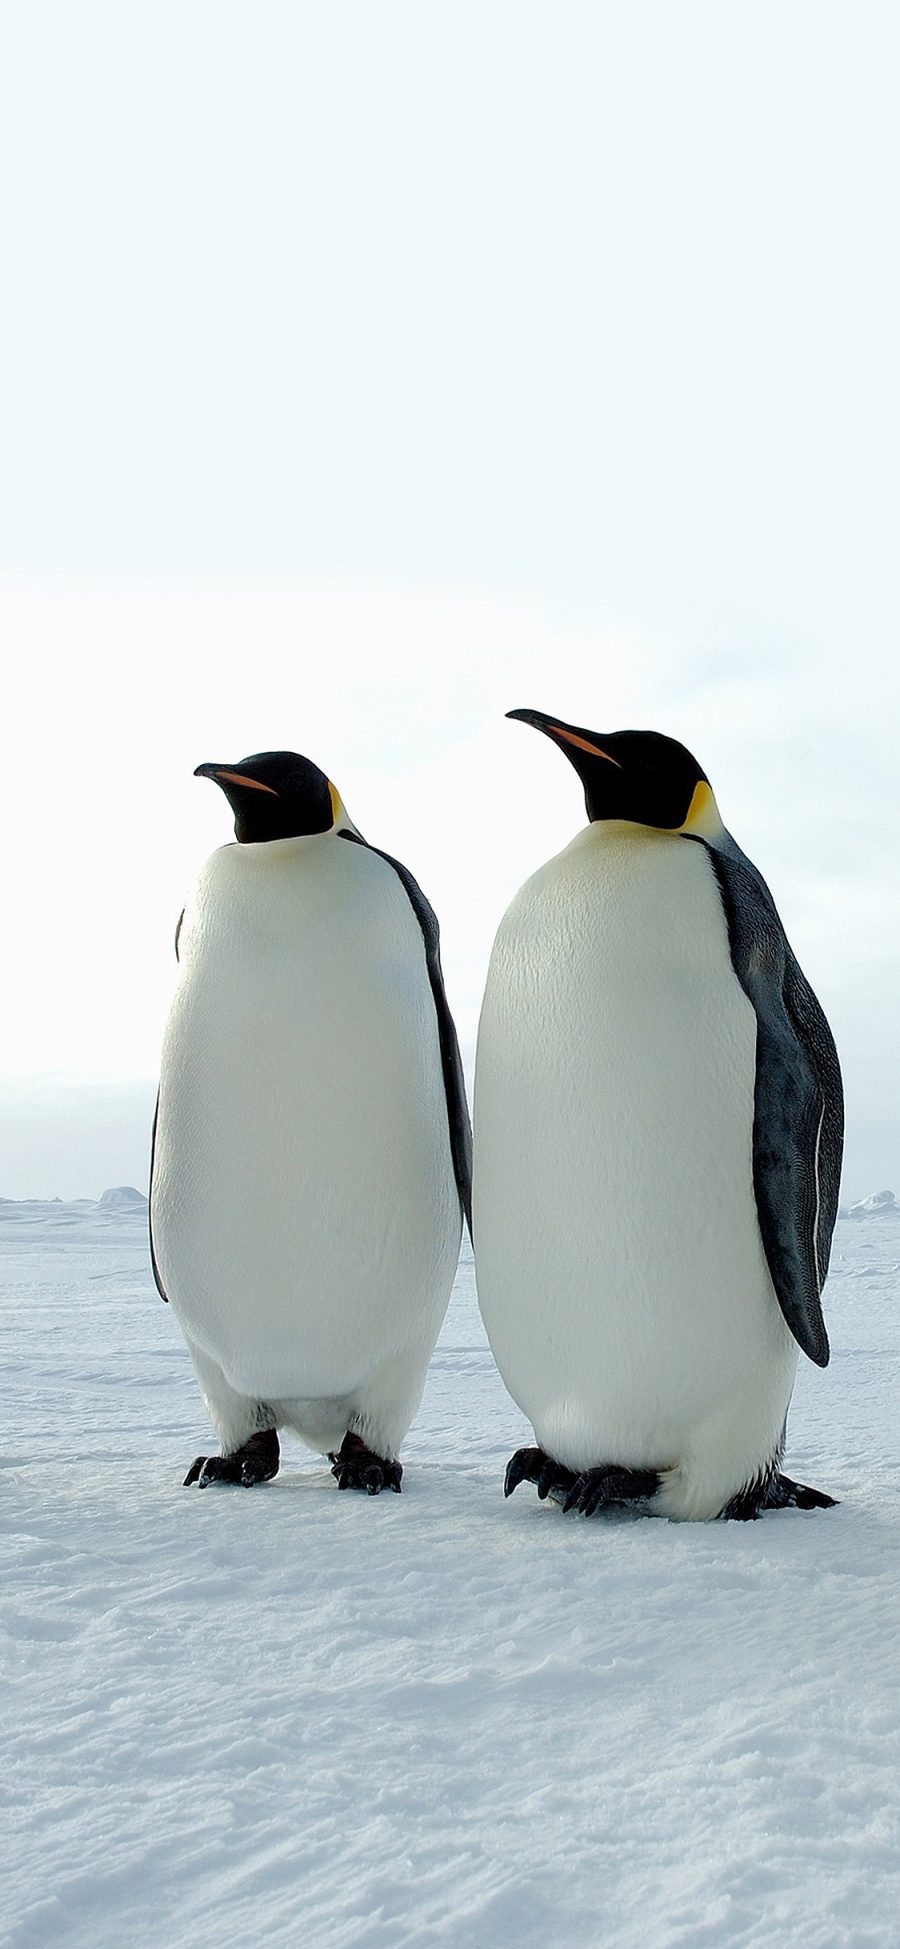 [2436×1125]企鹅 南极 雪地 白色 冷 苹果手机壁纸图片